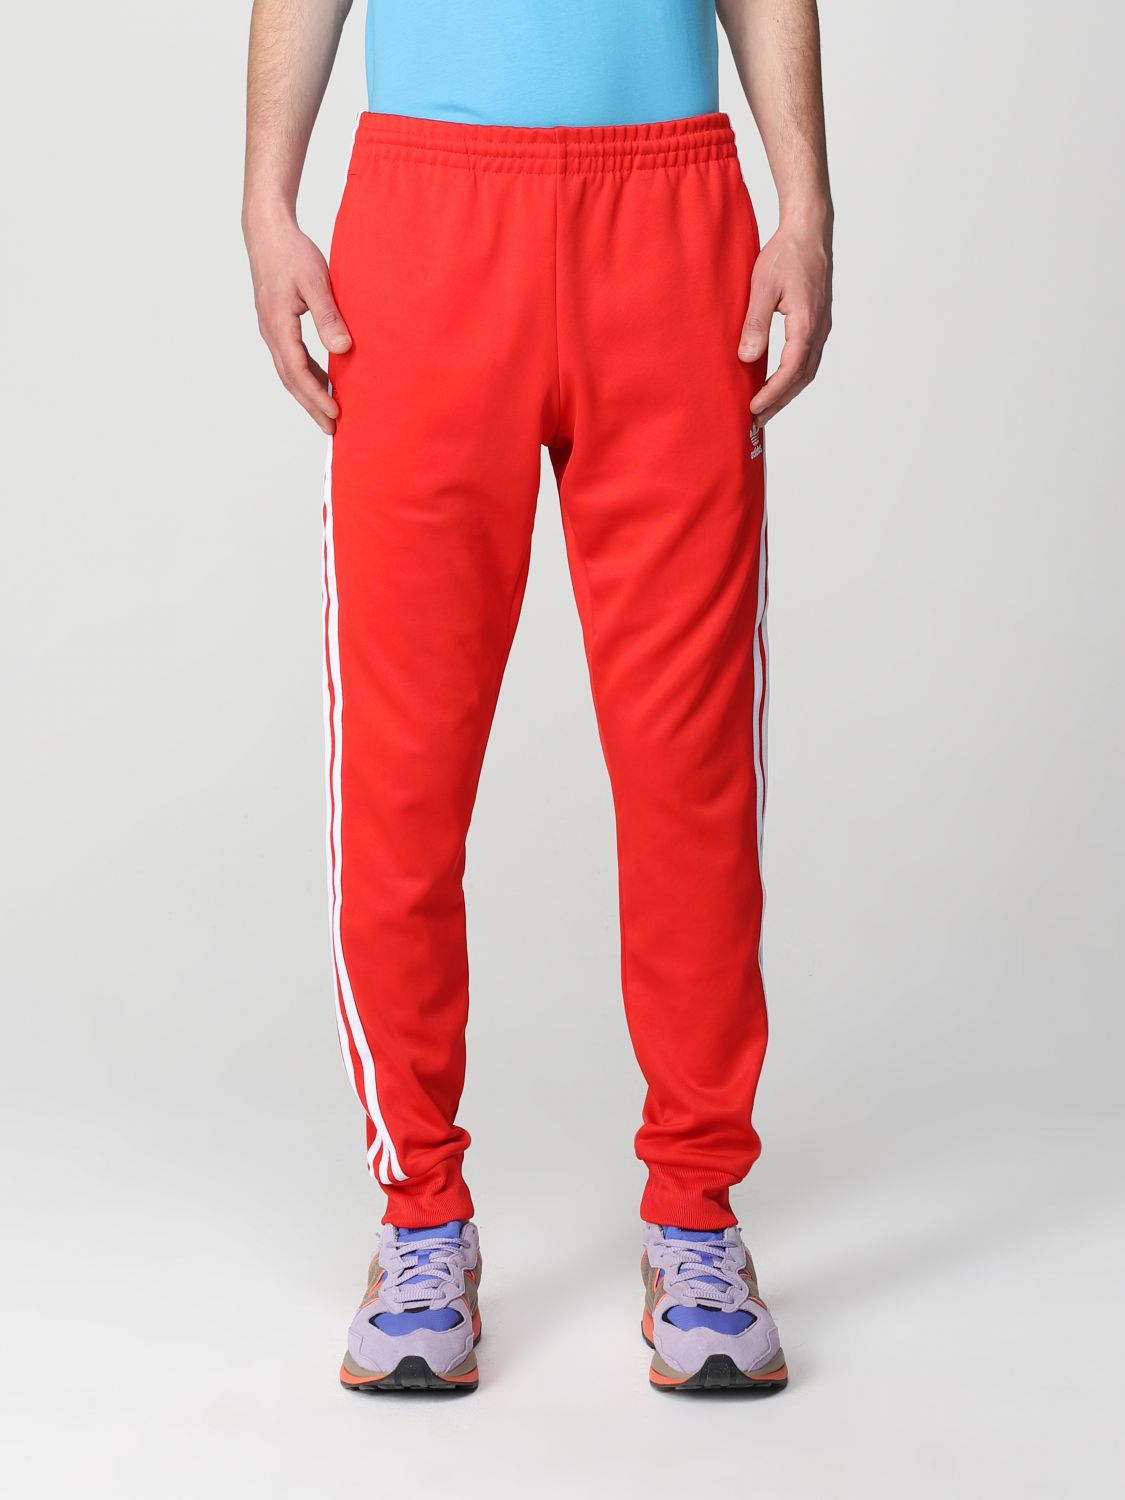 Adidas Originals Trousers  Men In Red